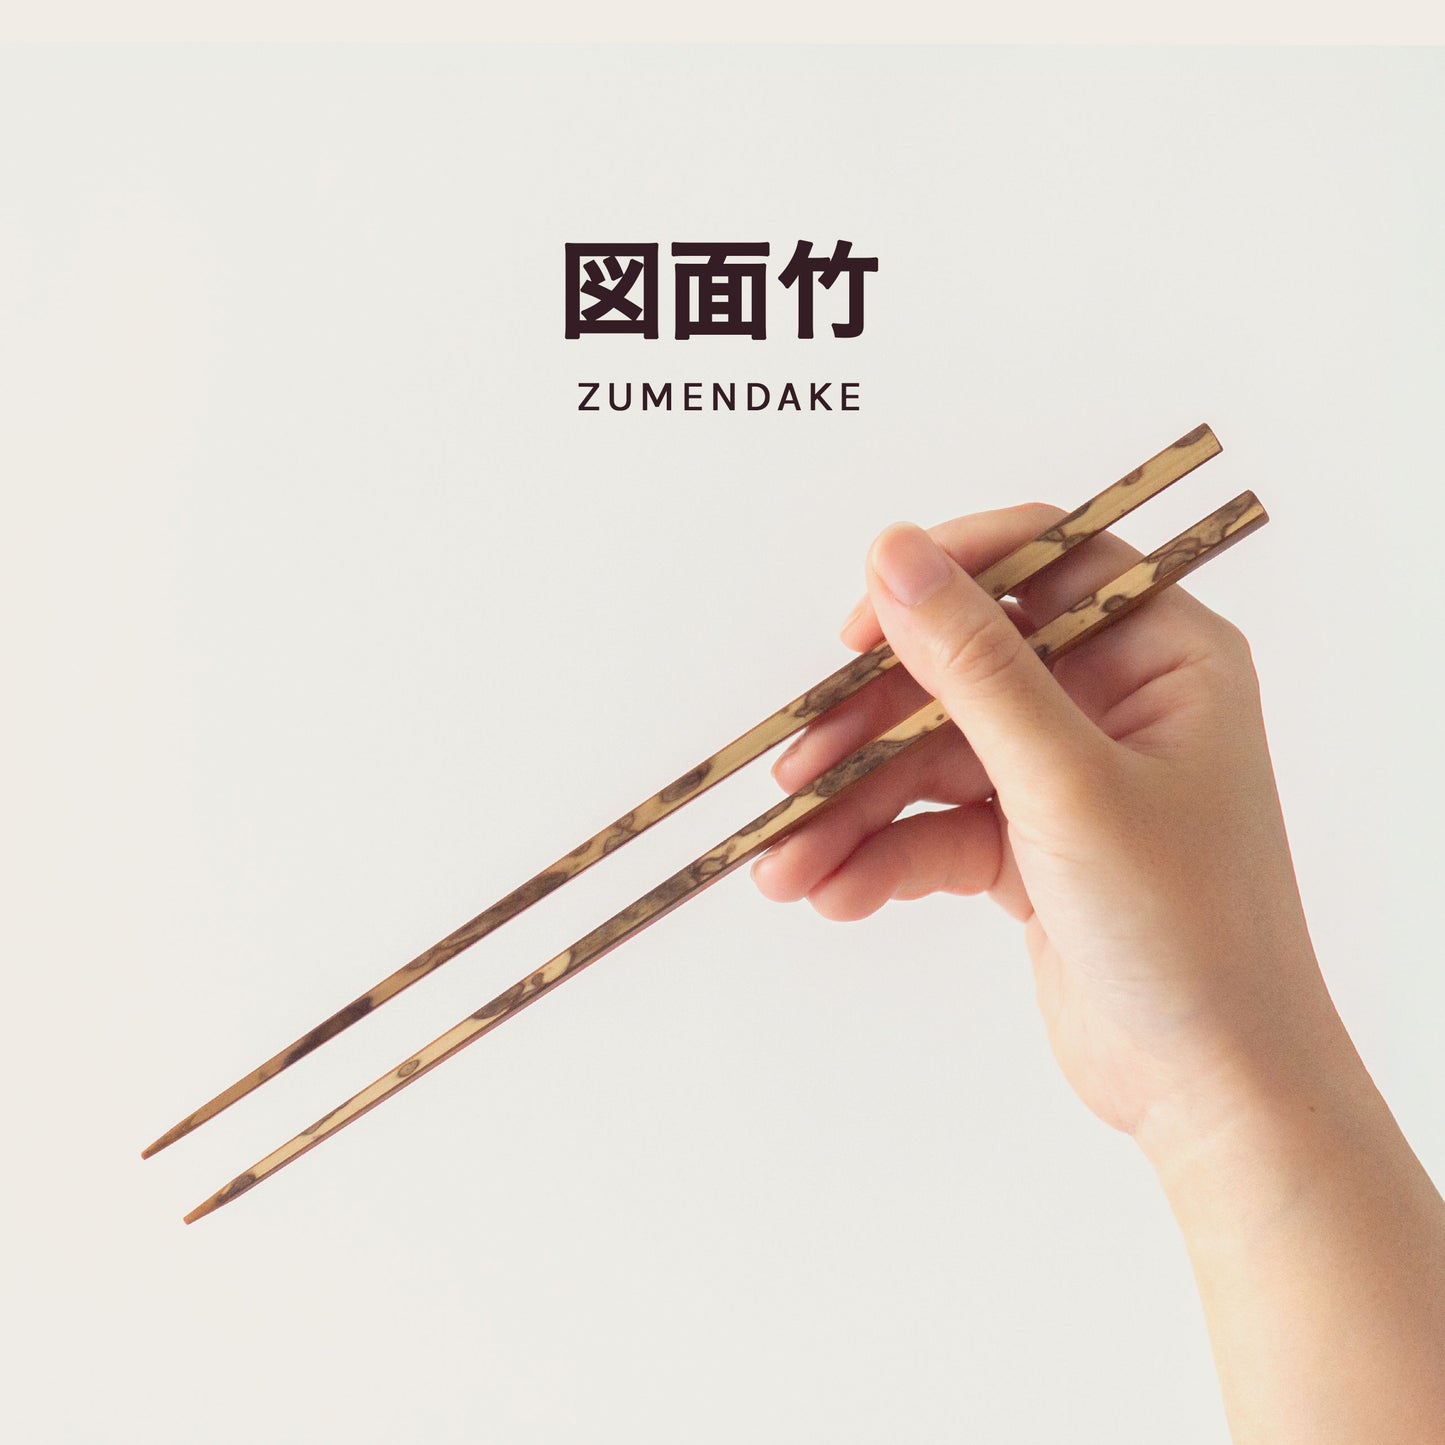 A hand holding a pair of chopsticks